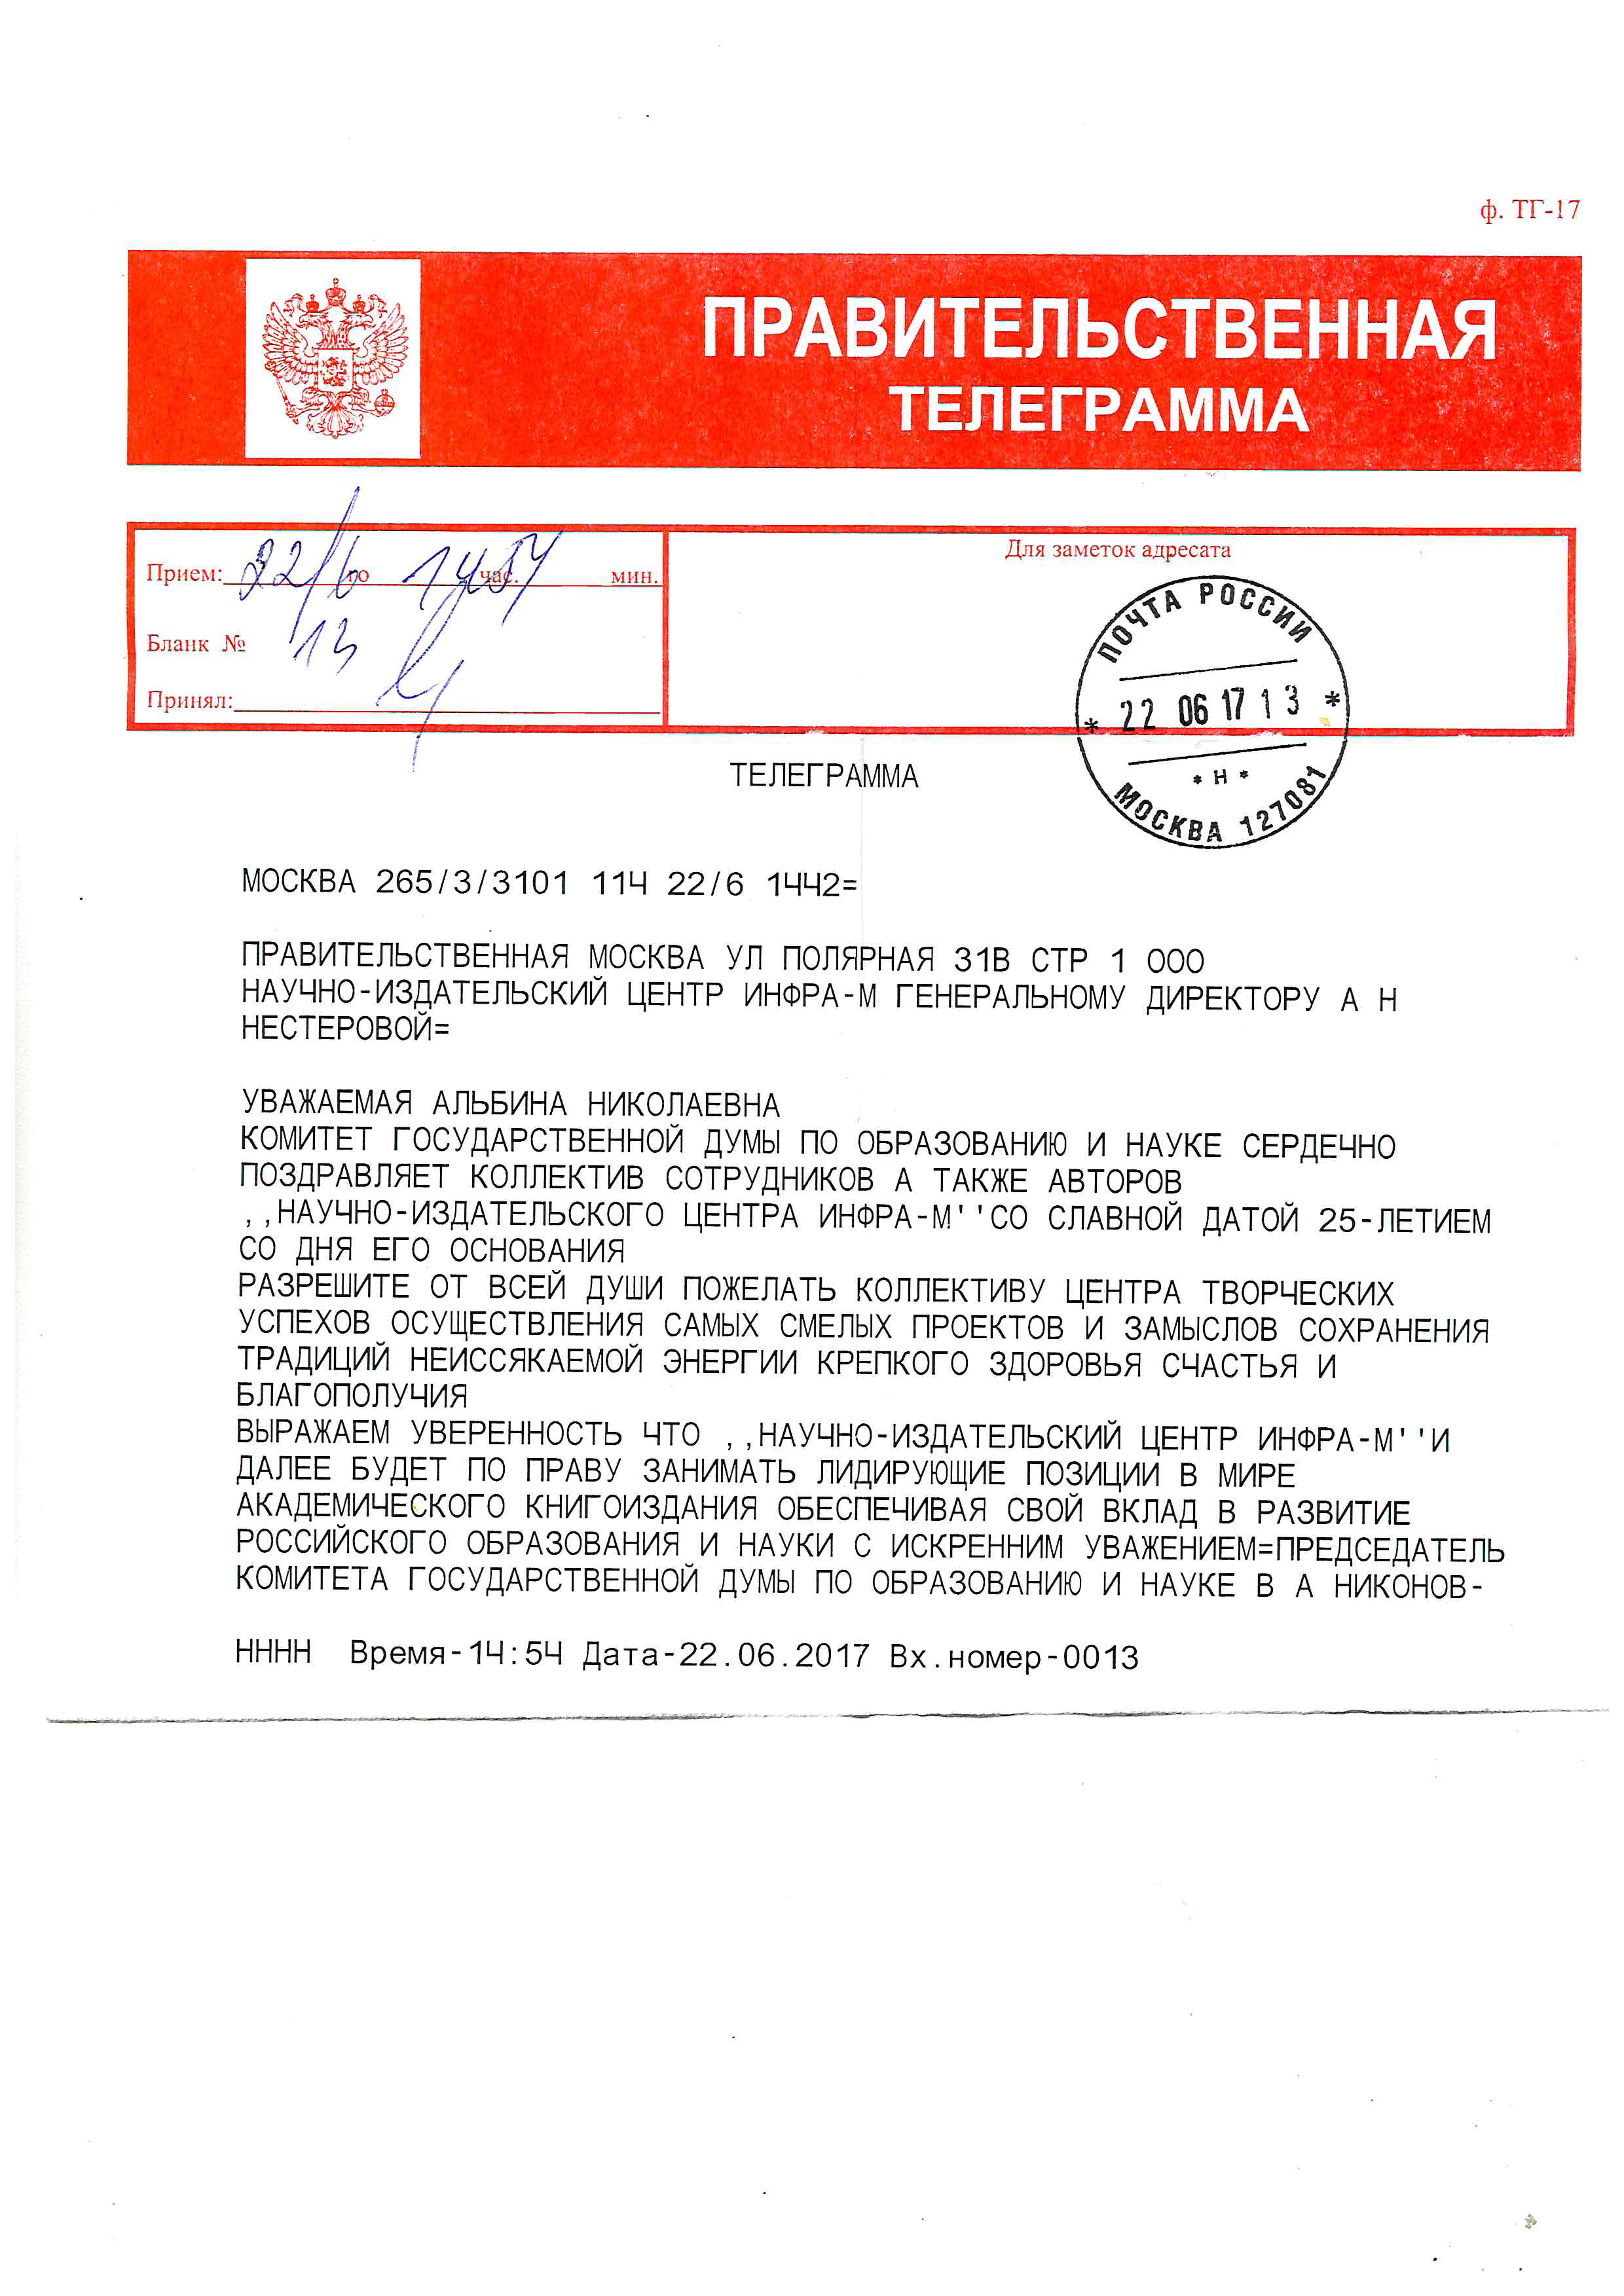 Поздравления от Комитета Государственной Думы РФ по образованию и науке